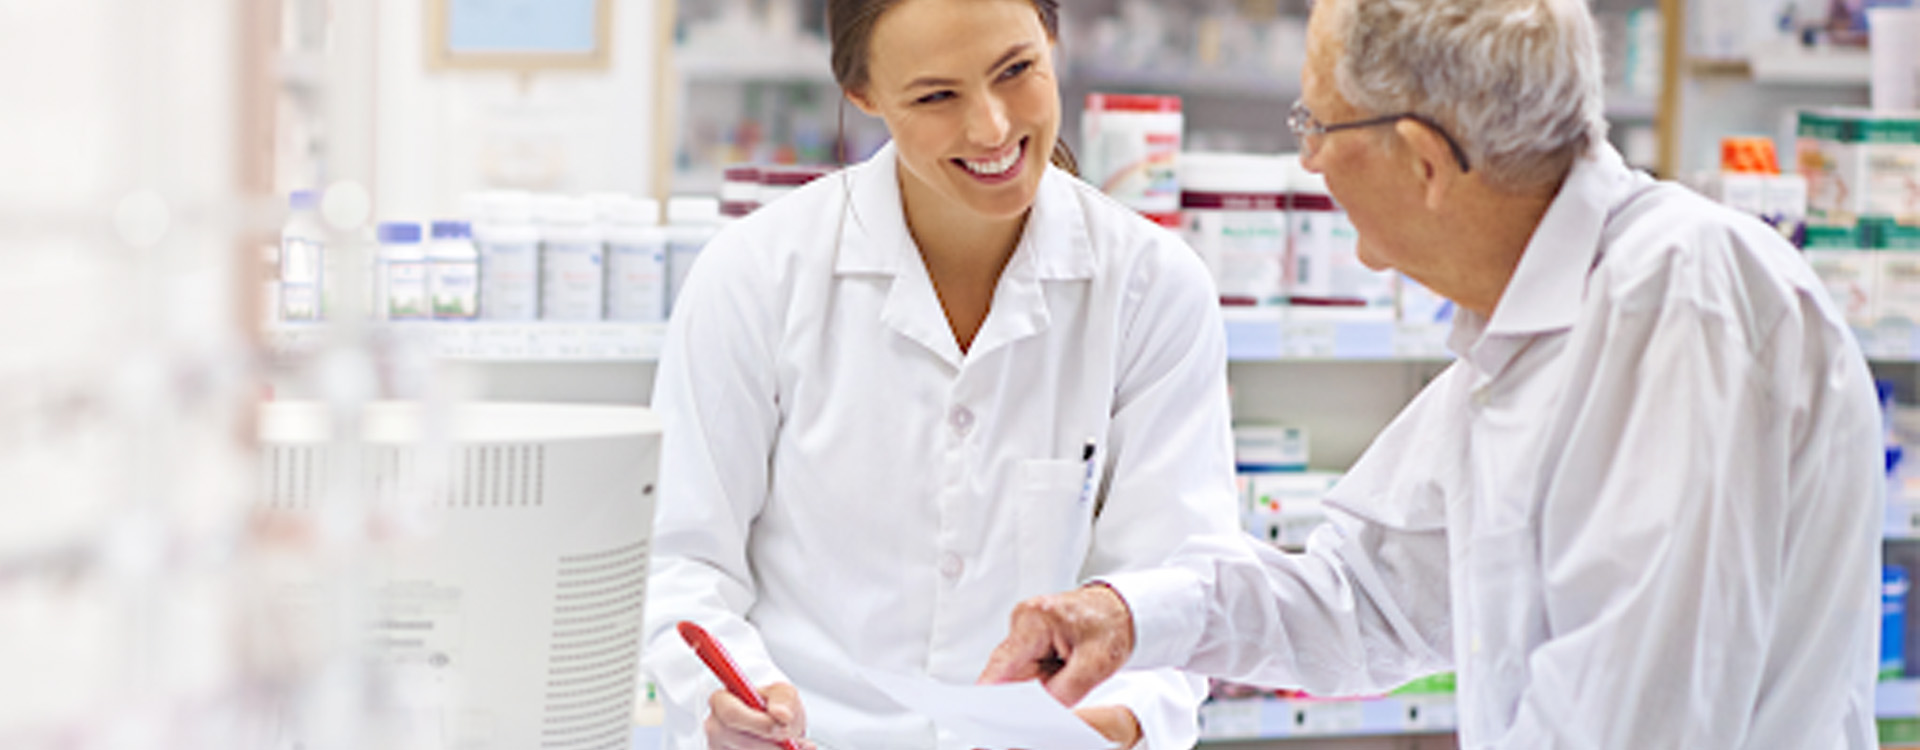 5 dicas para melhorar a experiência do cliente na sua farmácia - Infarma : Infarma